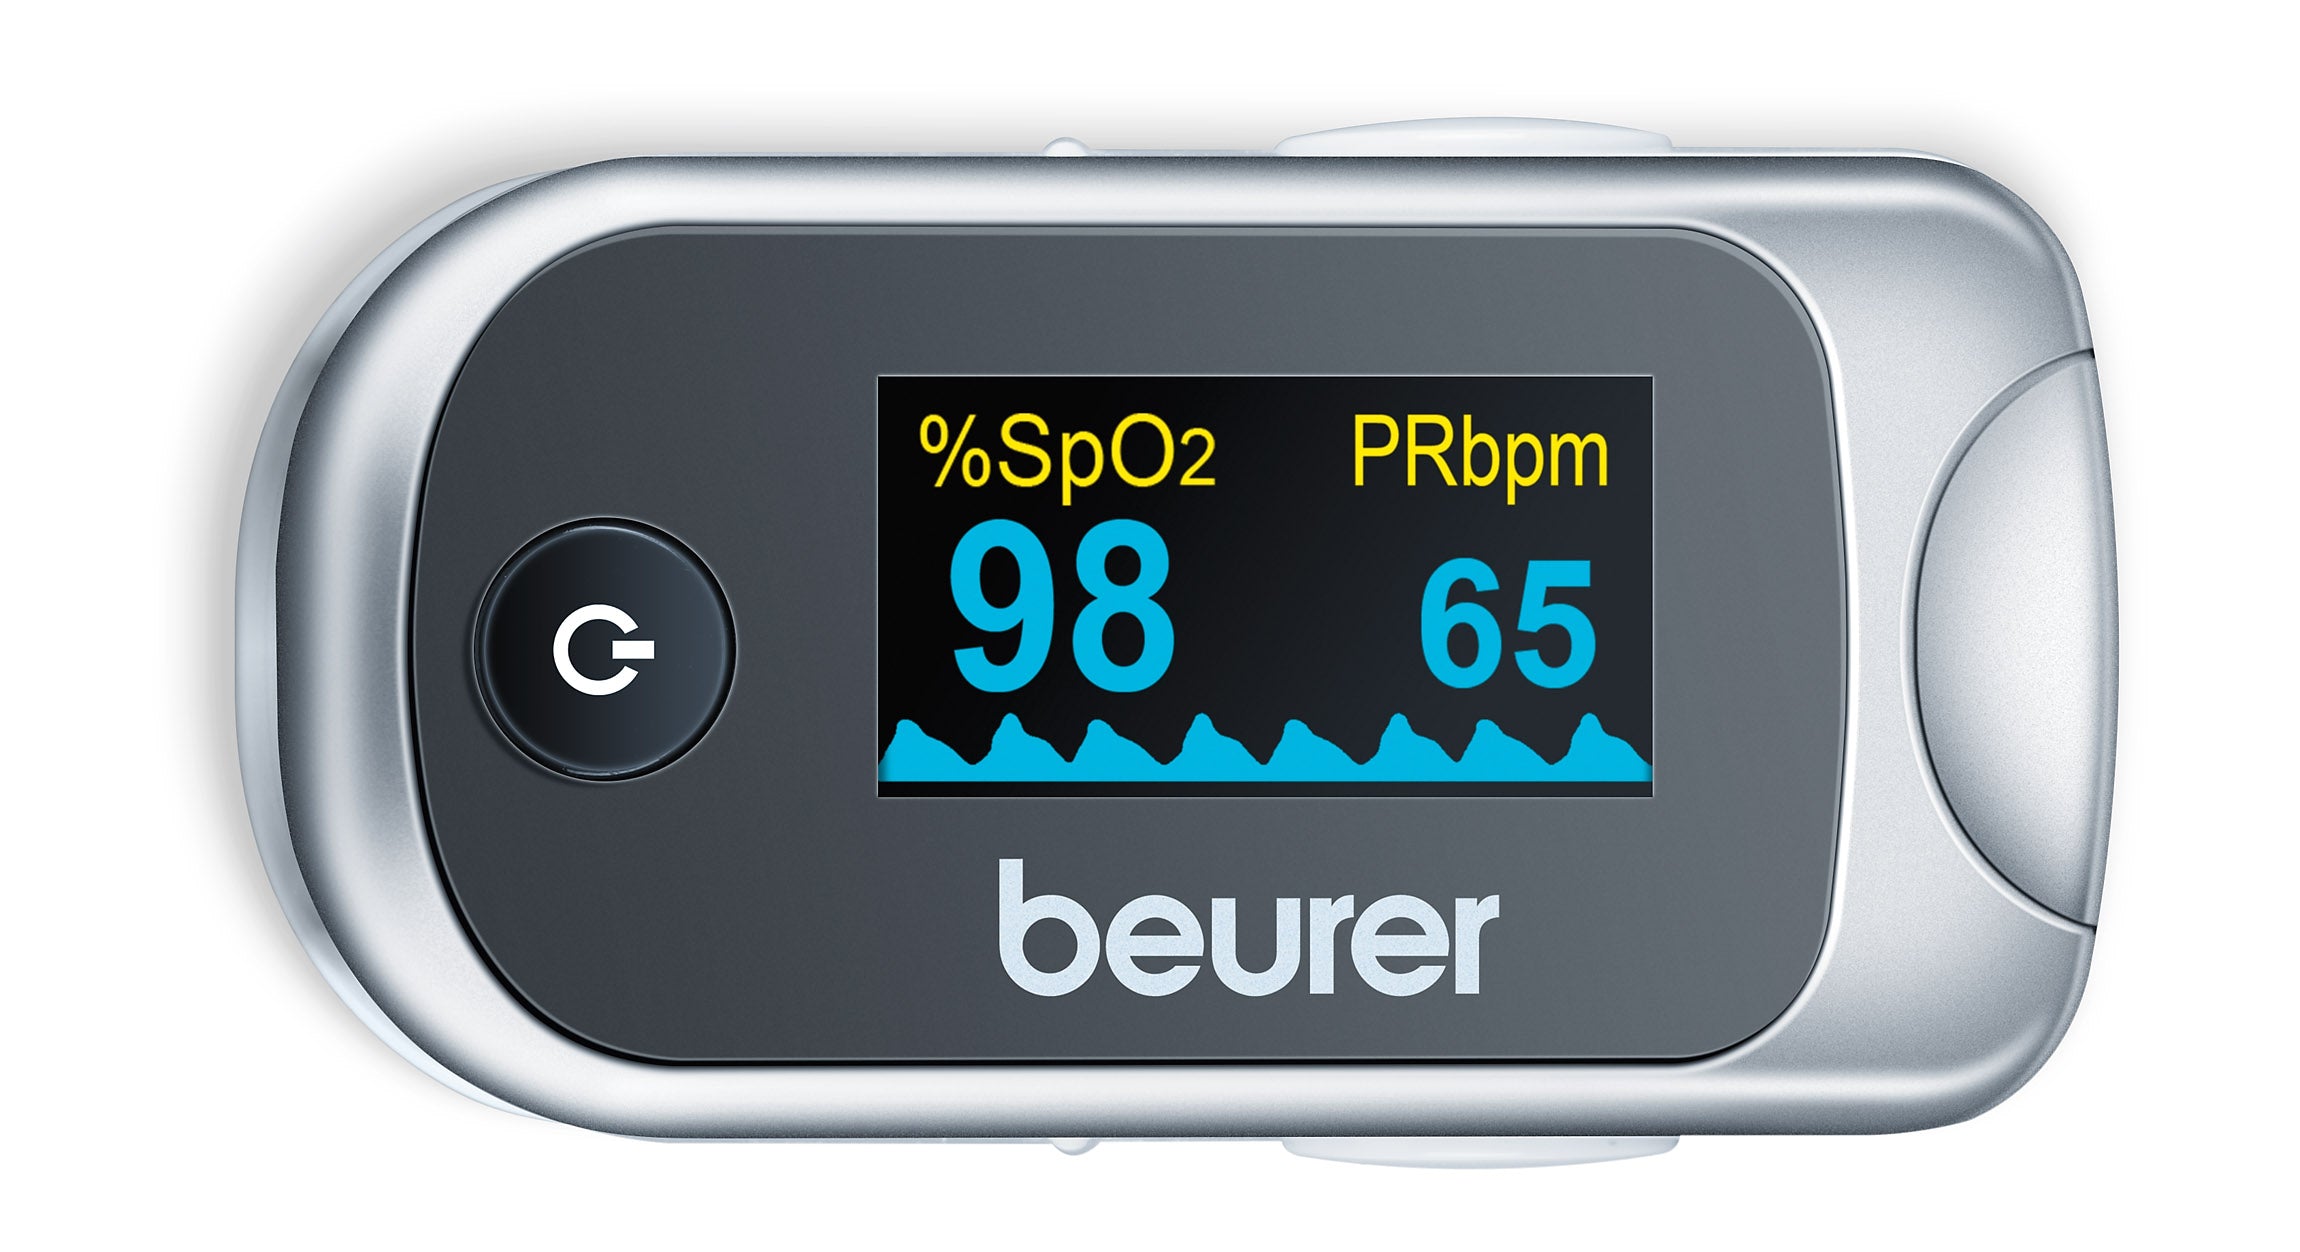 Beurer PO40 - Saturatiemeter/Pulseoximeter - Hartslagmeter